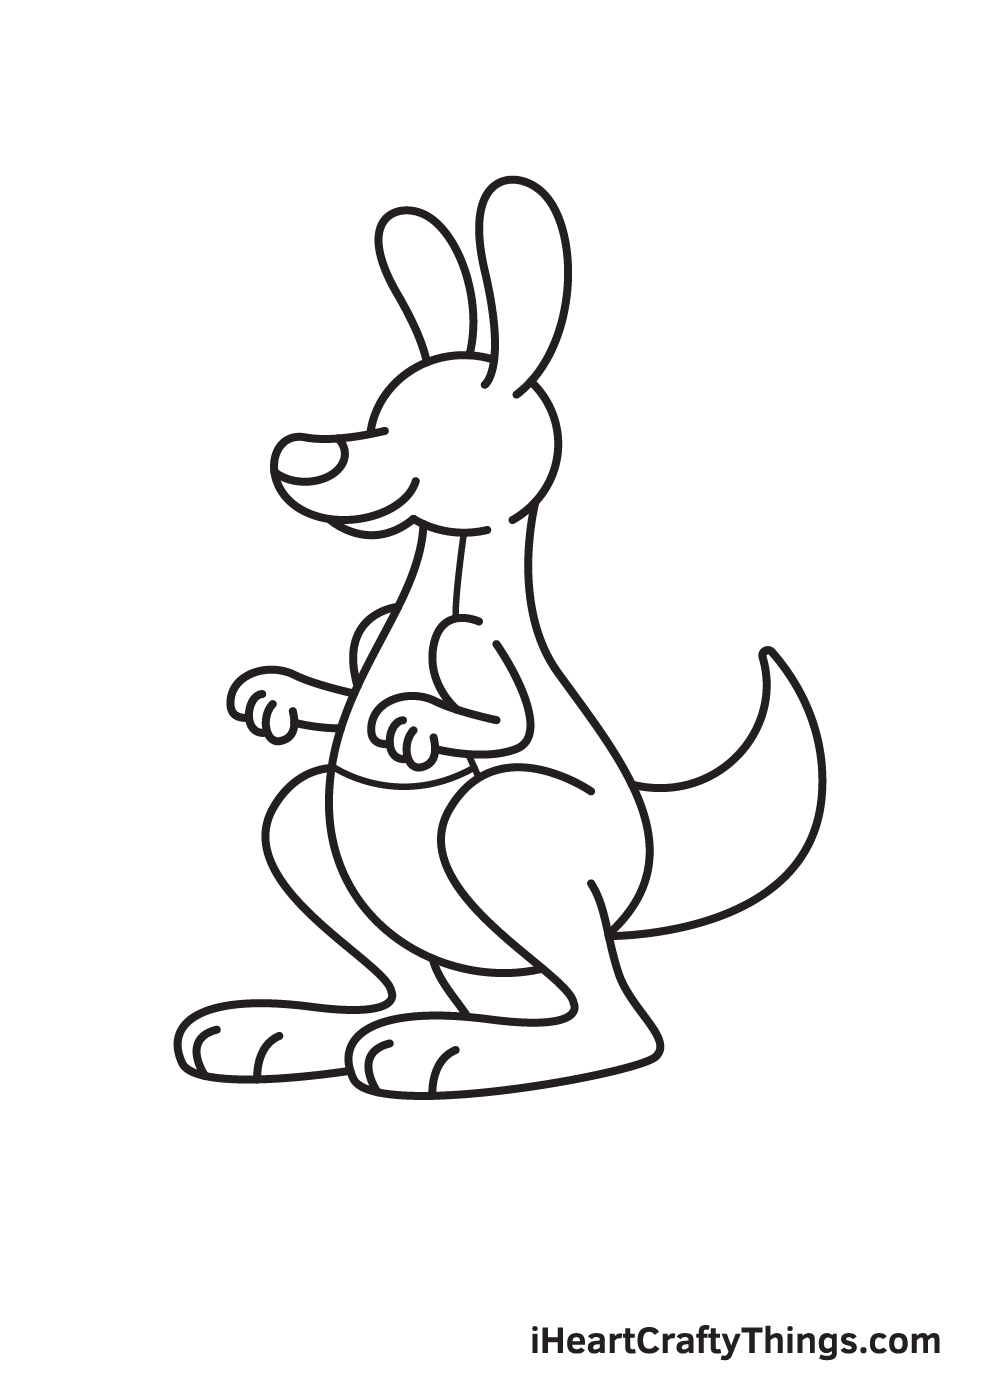 kangaroo drawing step 8